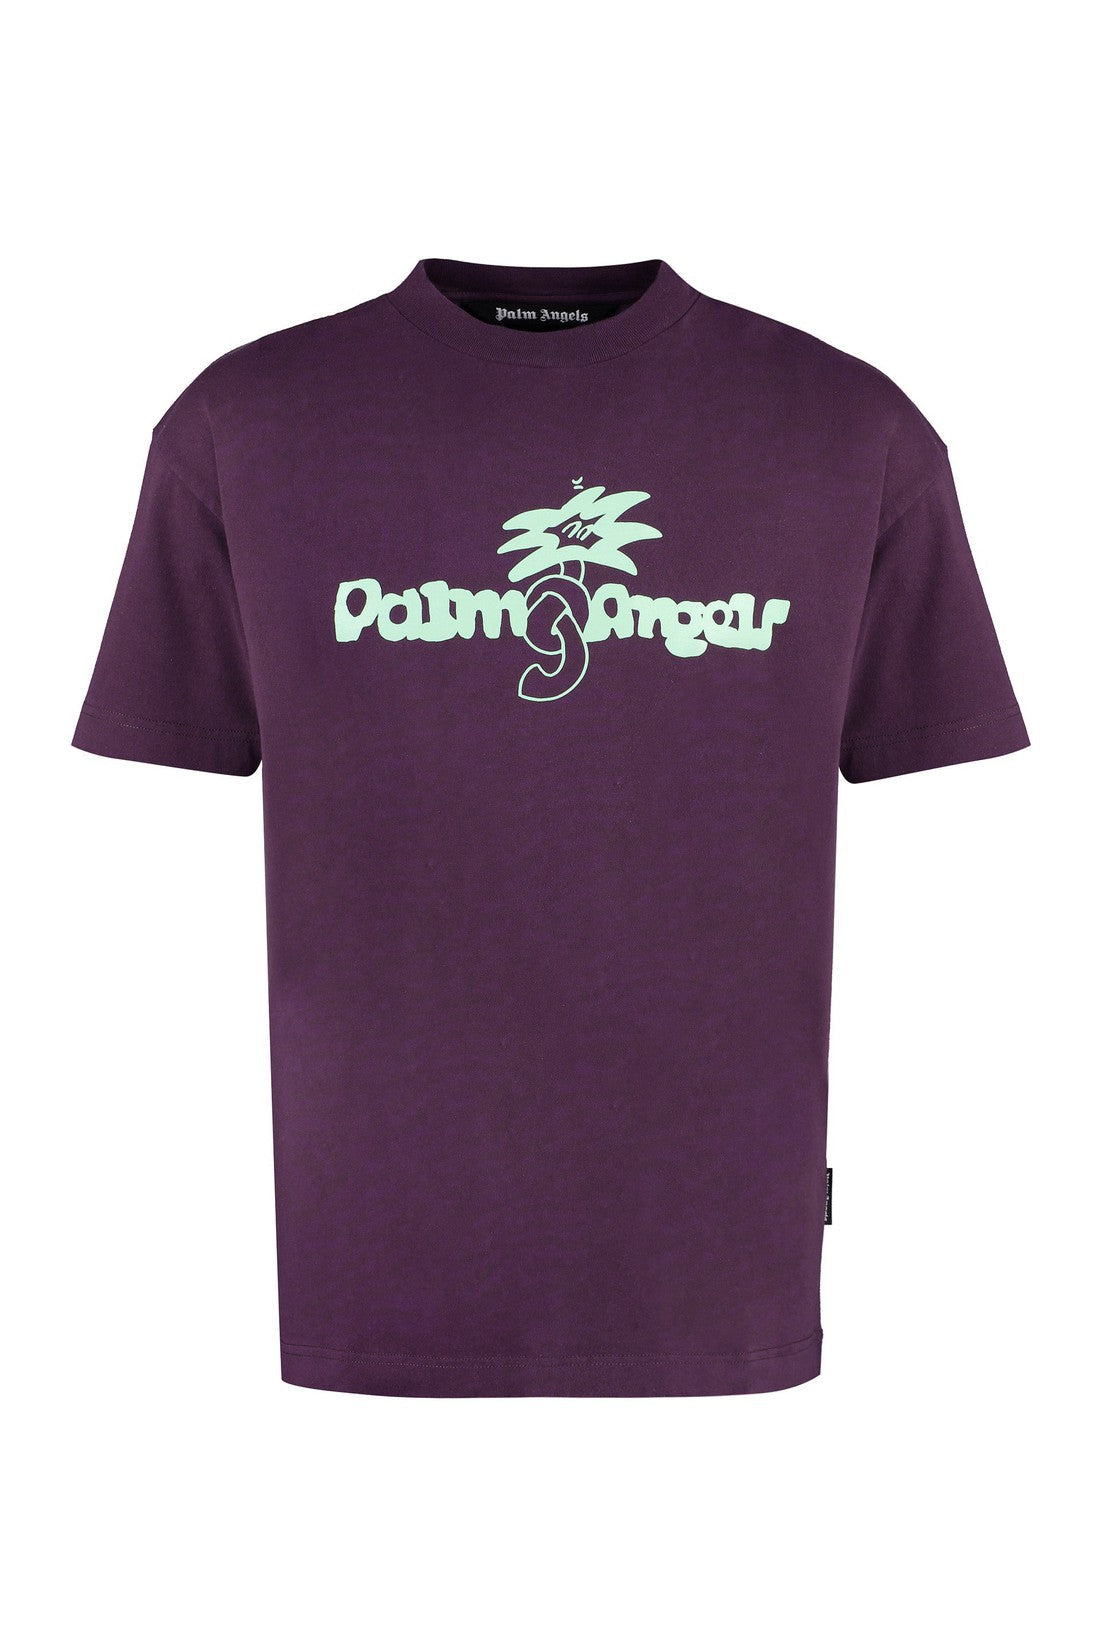 Palm Angels-OUTLET-SALE-Douby cotton T-shirt-ARCHIVIST